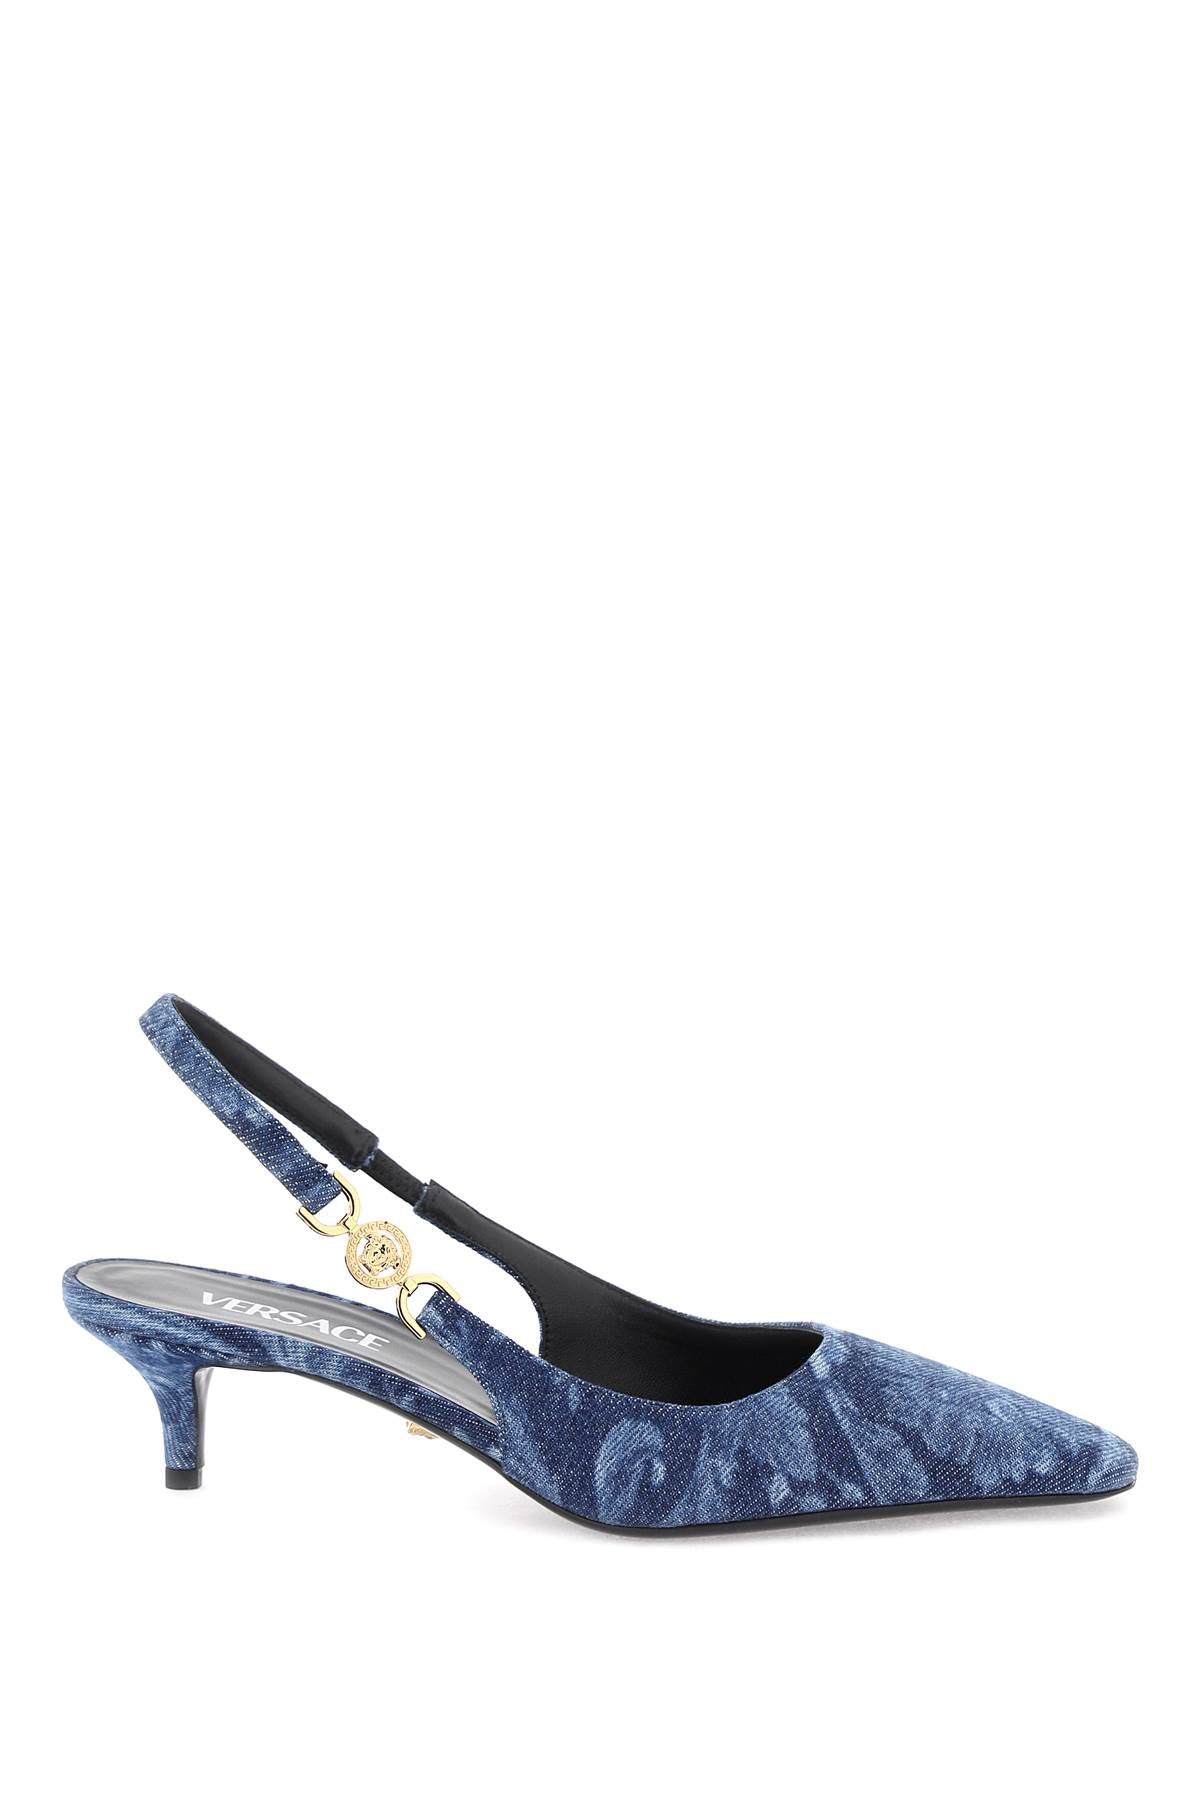 Bốt cao gót dây chun Baroque - Màu xanh dương, gót cao 5cm, 100% cotton, giày nữ dành cho SS24